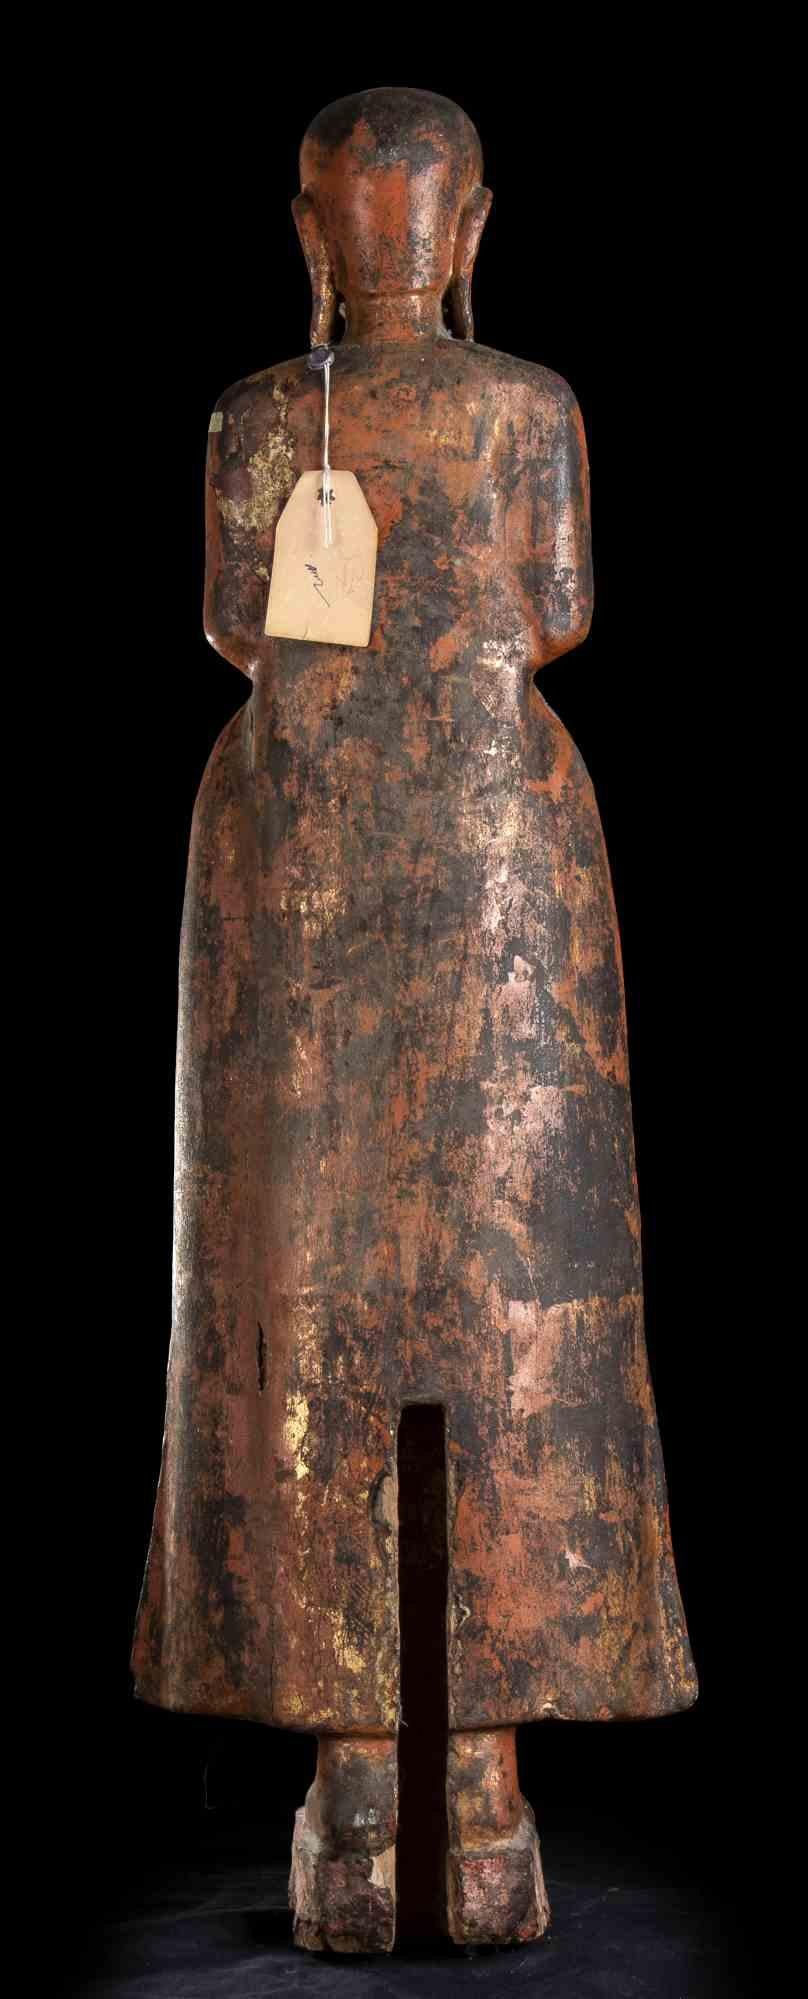 Eine weibliche Holzfigur.
Indien, 19. Jahrhundert.

Die Figur ist stehend dargestellt, mit zusammengelegten Füßen auf einem kleinen rechteckigen Sockel, bekleidet mit einem weiten Kleid mit verlängerten Seiten des Rocks, die Hände im Schoß